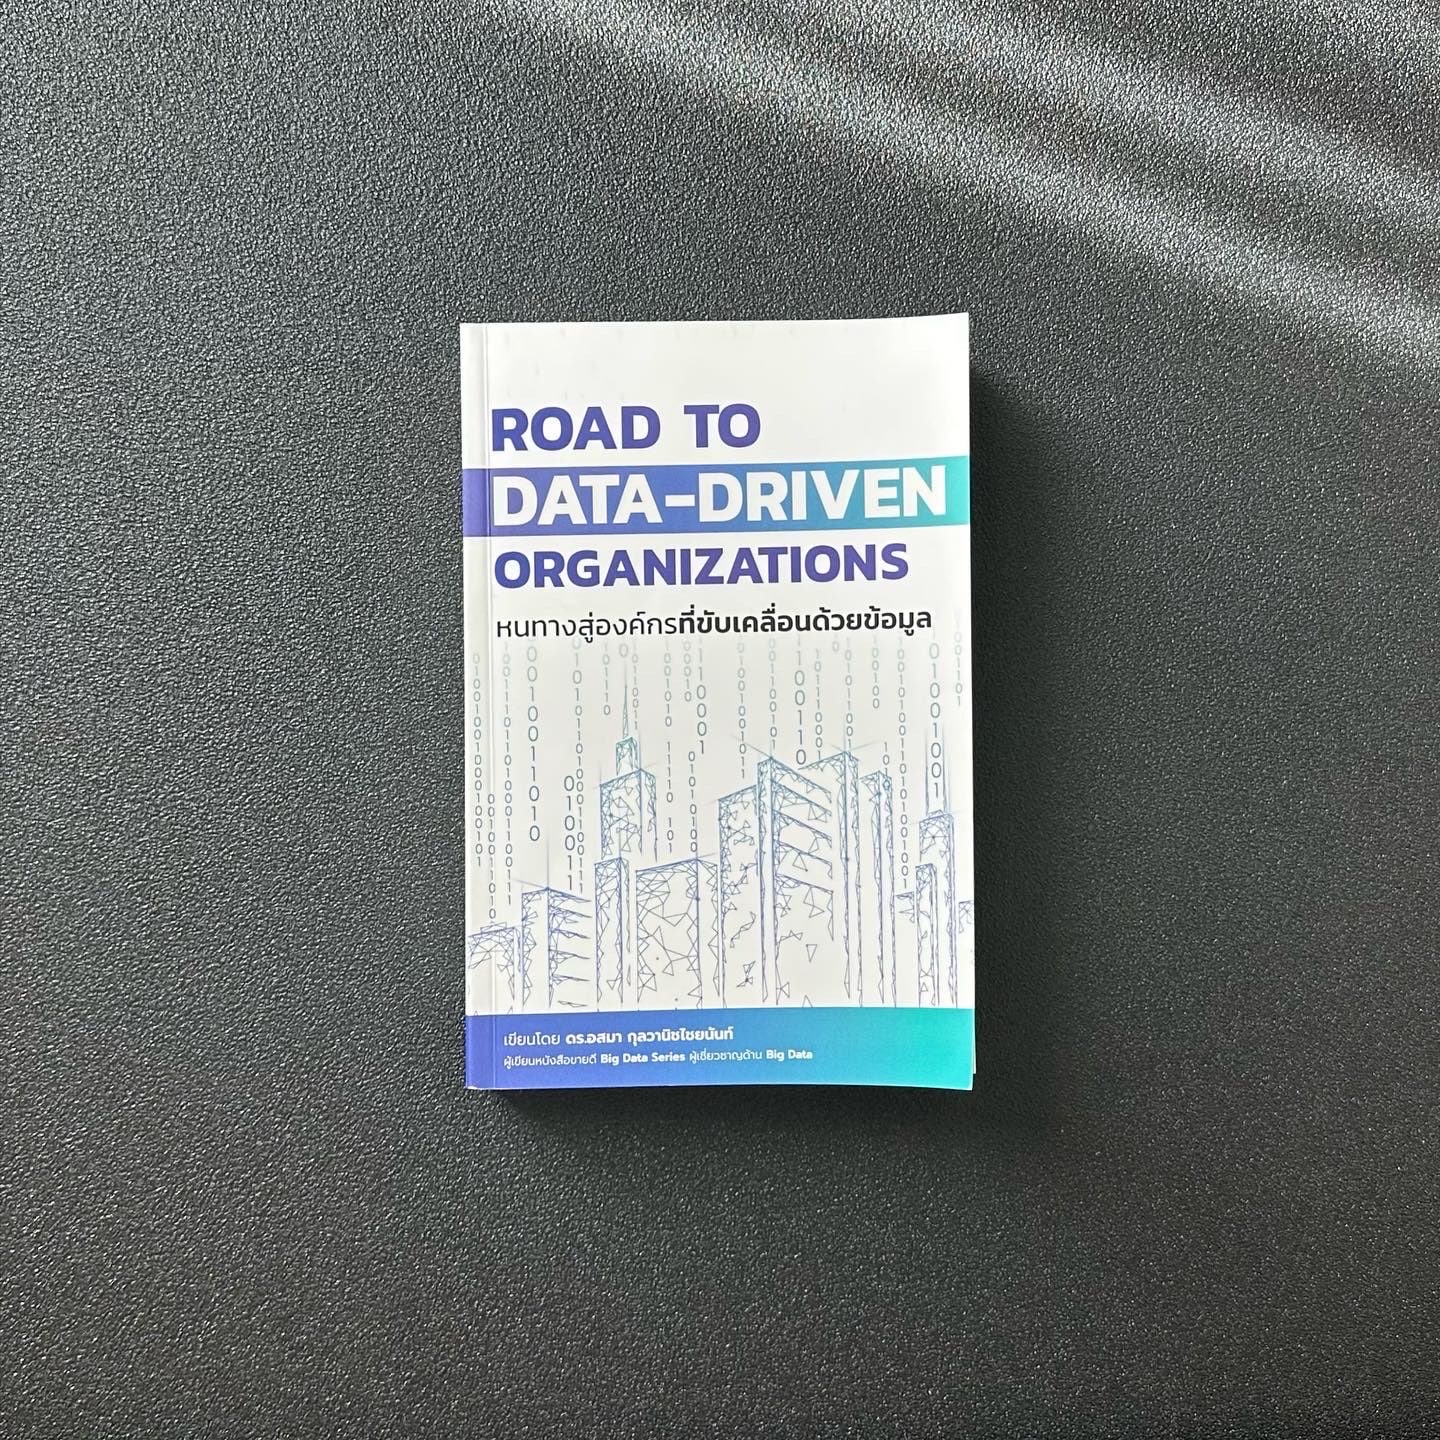 สรุปหนังสือ Road to Data-Driven Organization หนทางสู่องค์กรที่ขับเคลื่อนด้วยข้อมูล ดร. อสมา กุลวานิชไชยนันท์ เขียน